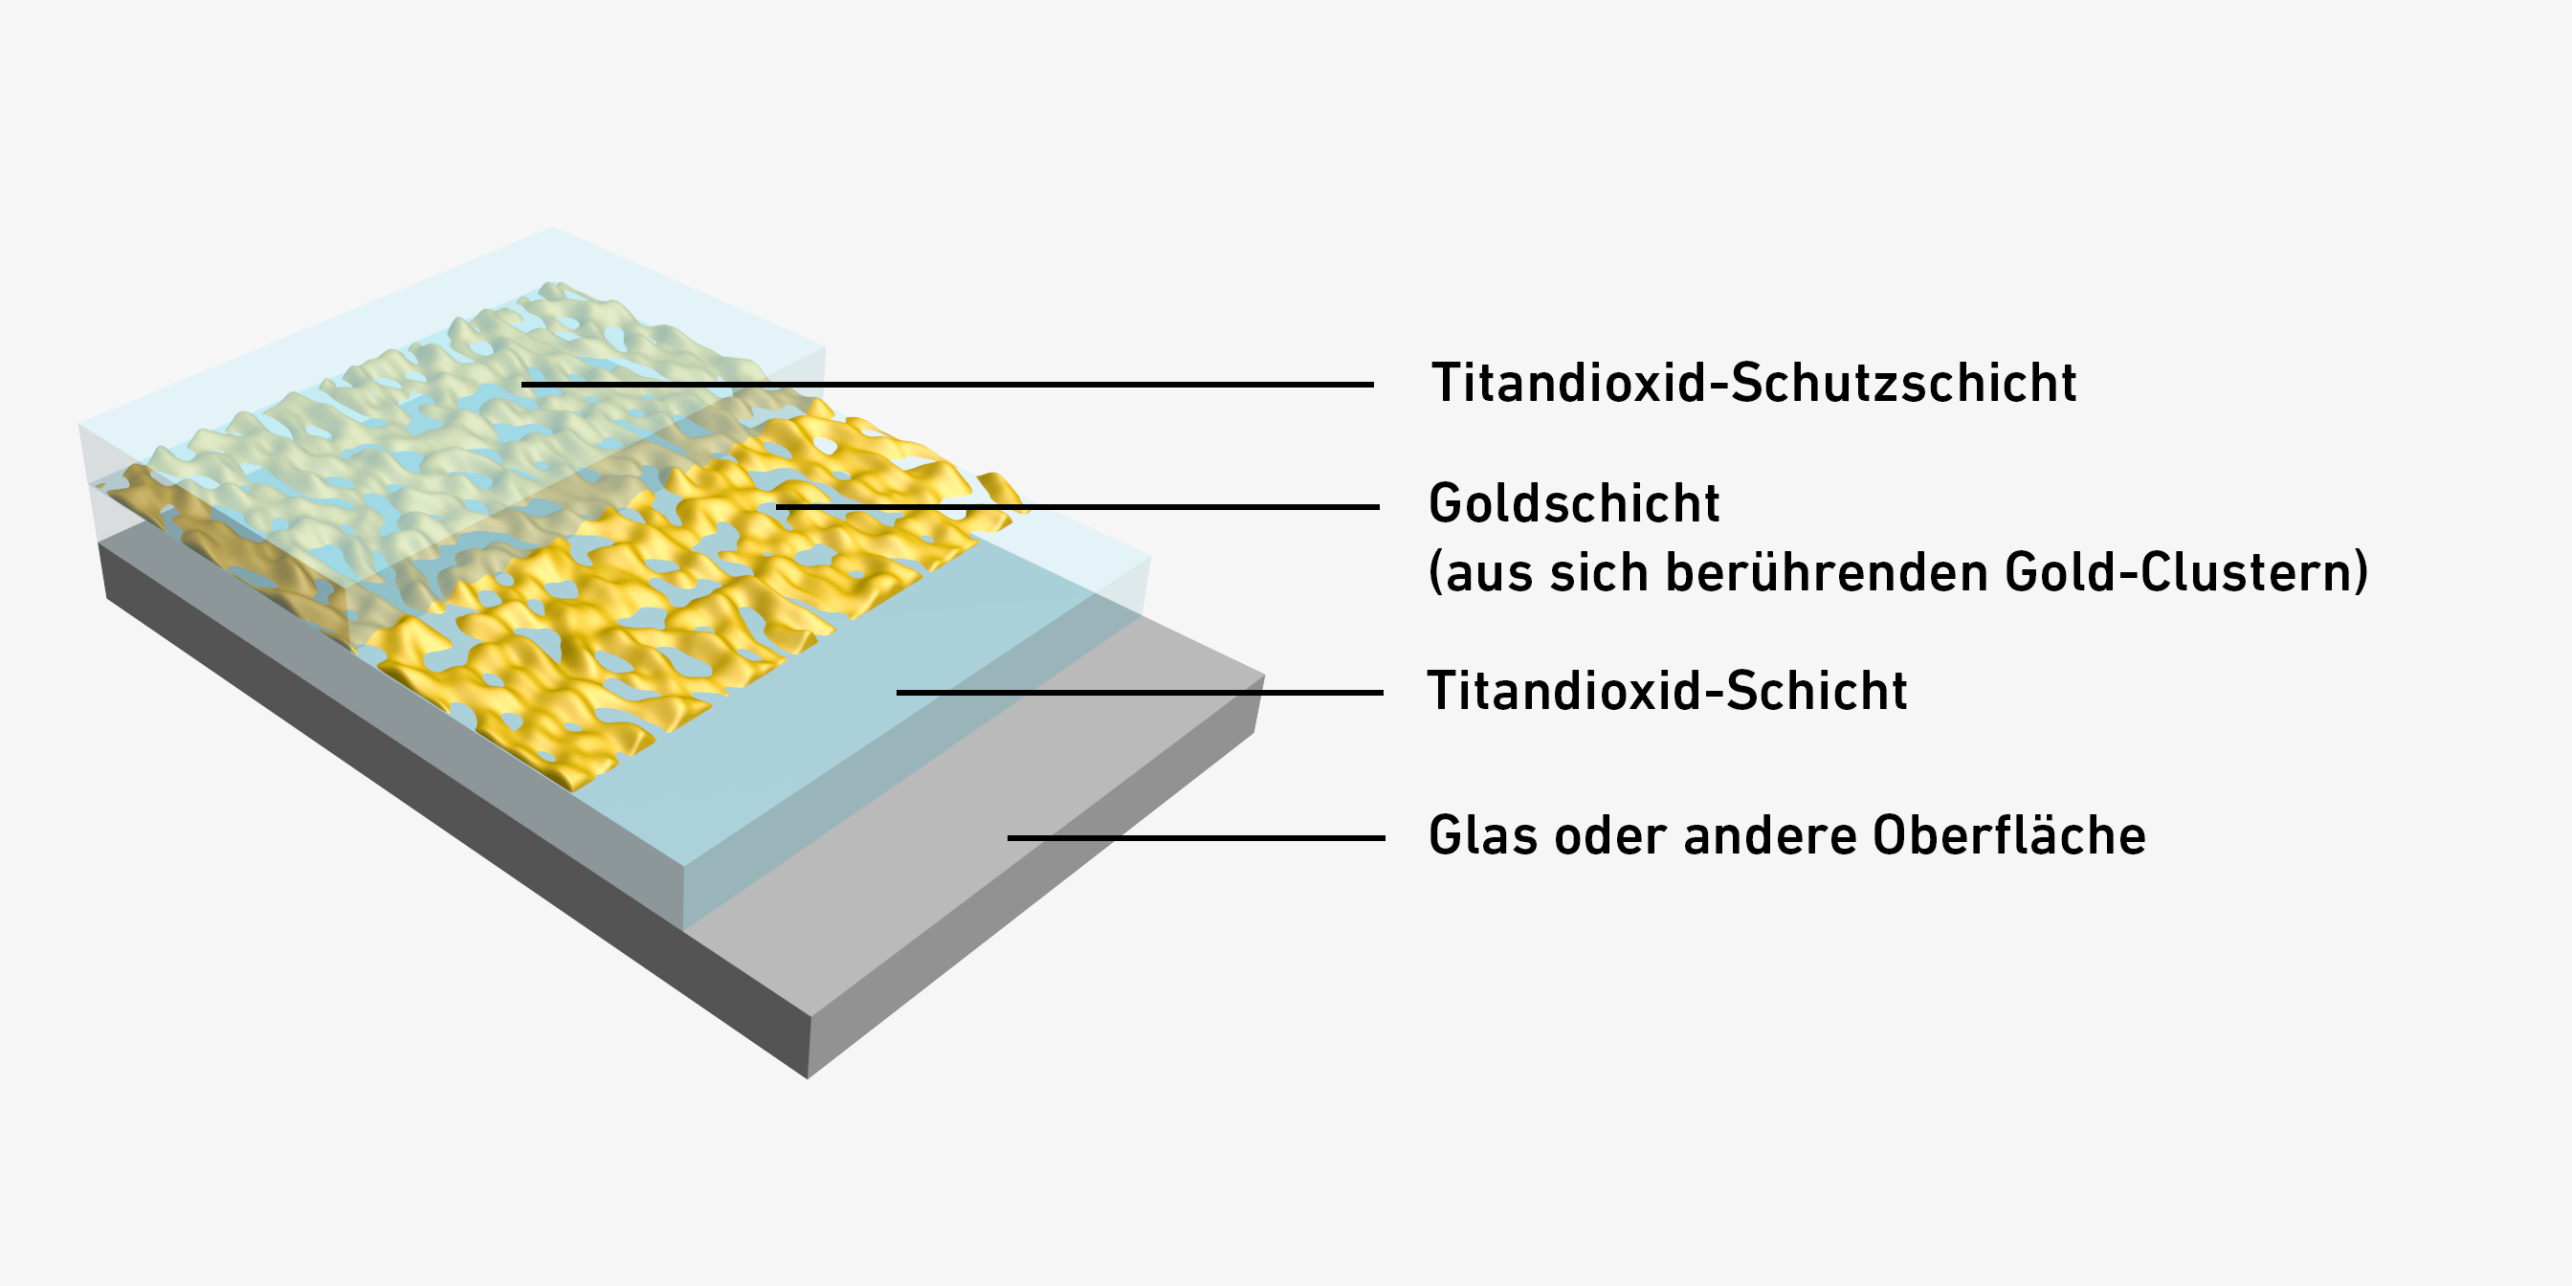 Vergrösserte Ansicht: Eine Illustration davon, wie das Glas nicht mehr beschlägt. Es besteht aus 4 Schichten, einer Titandioxid-Schutzschicht, einer Goldschicht, einer Titandioxid-Schicht und dem Glas. 